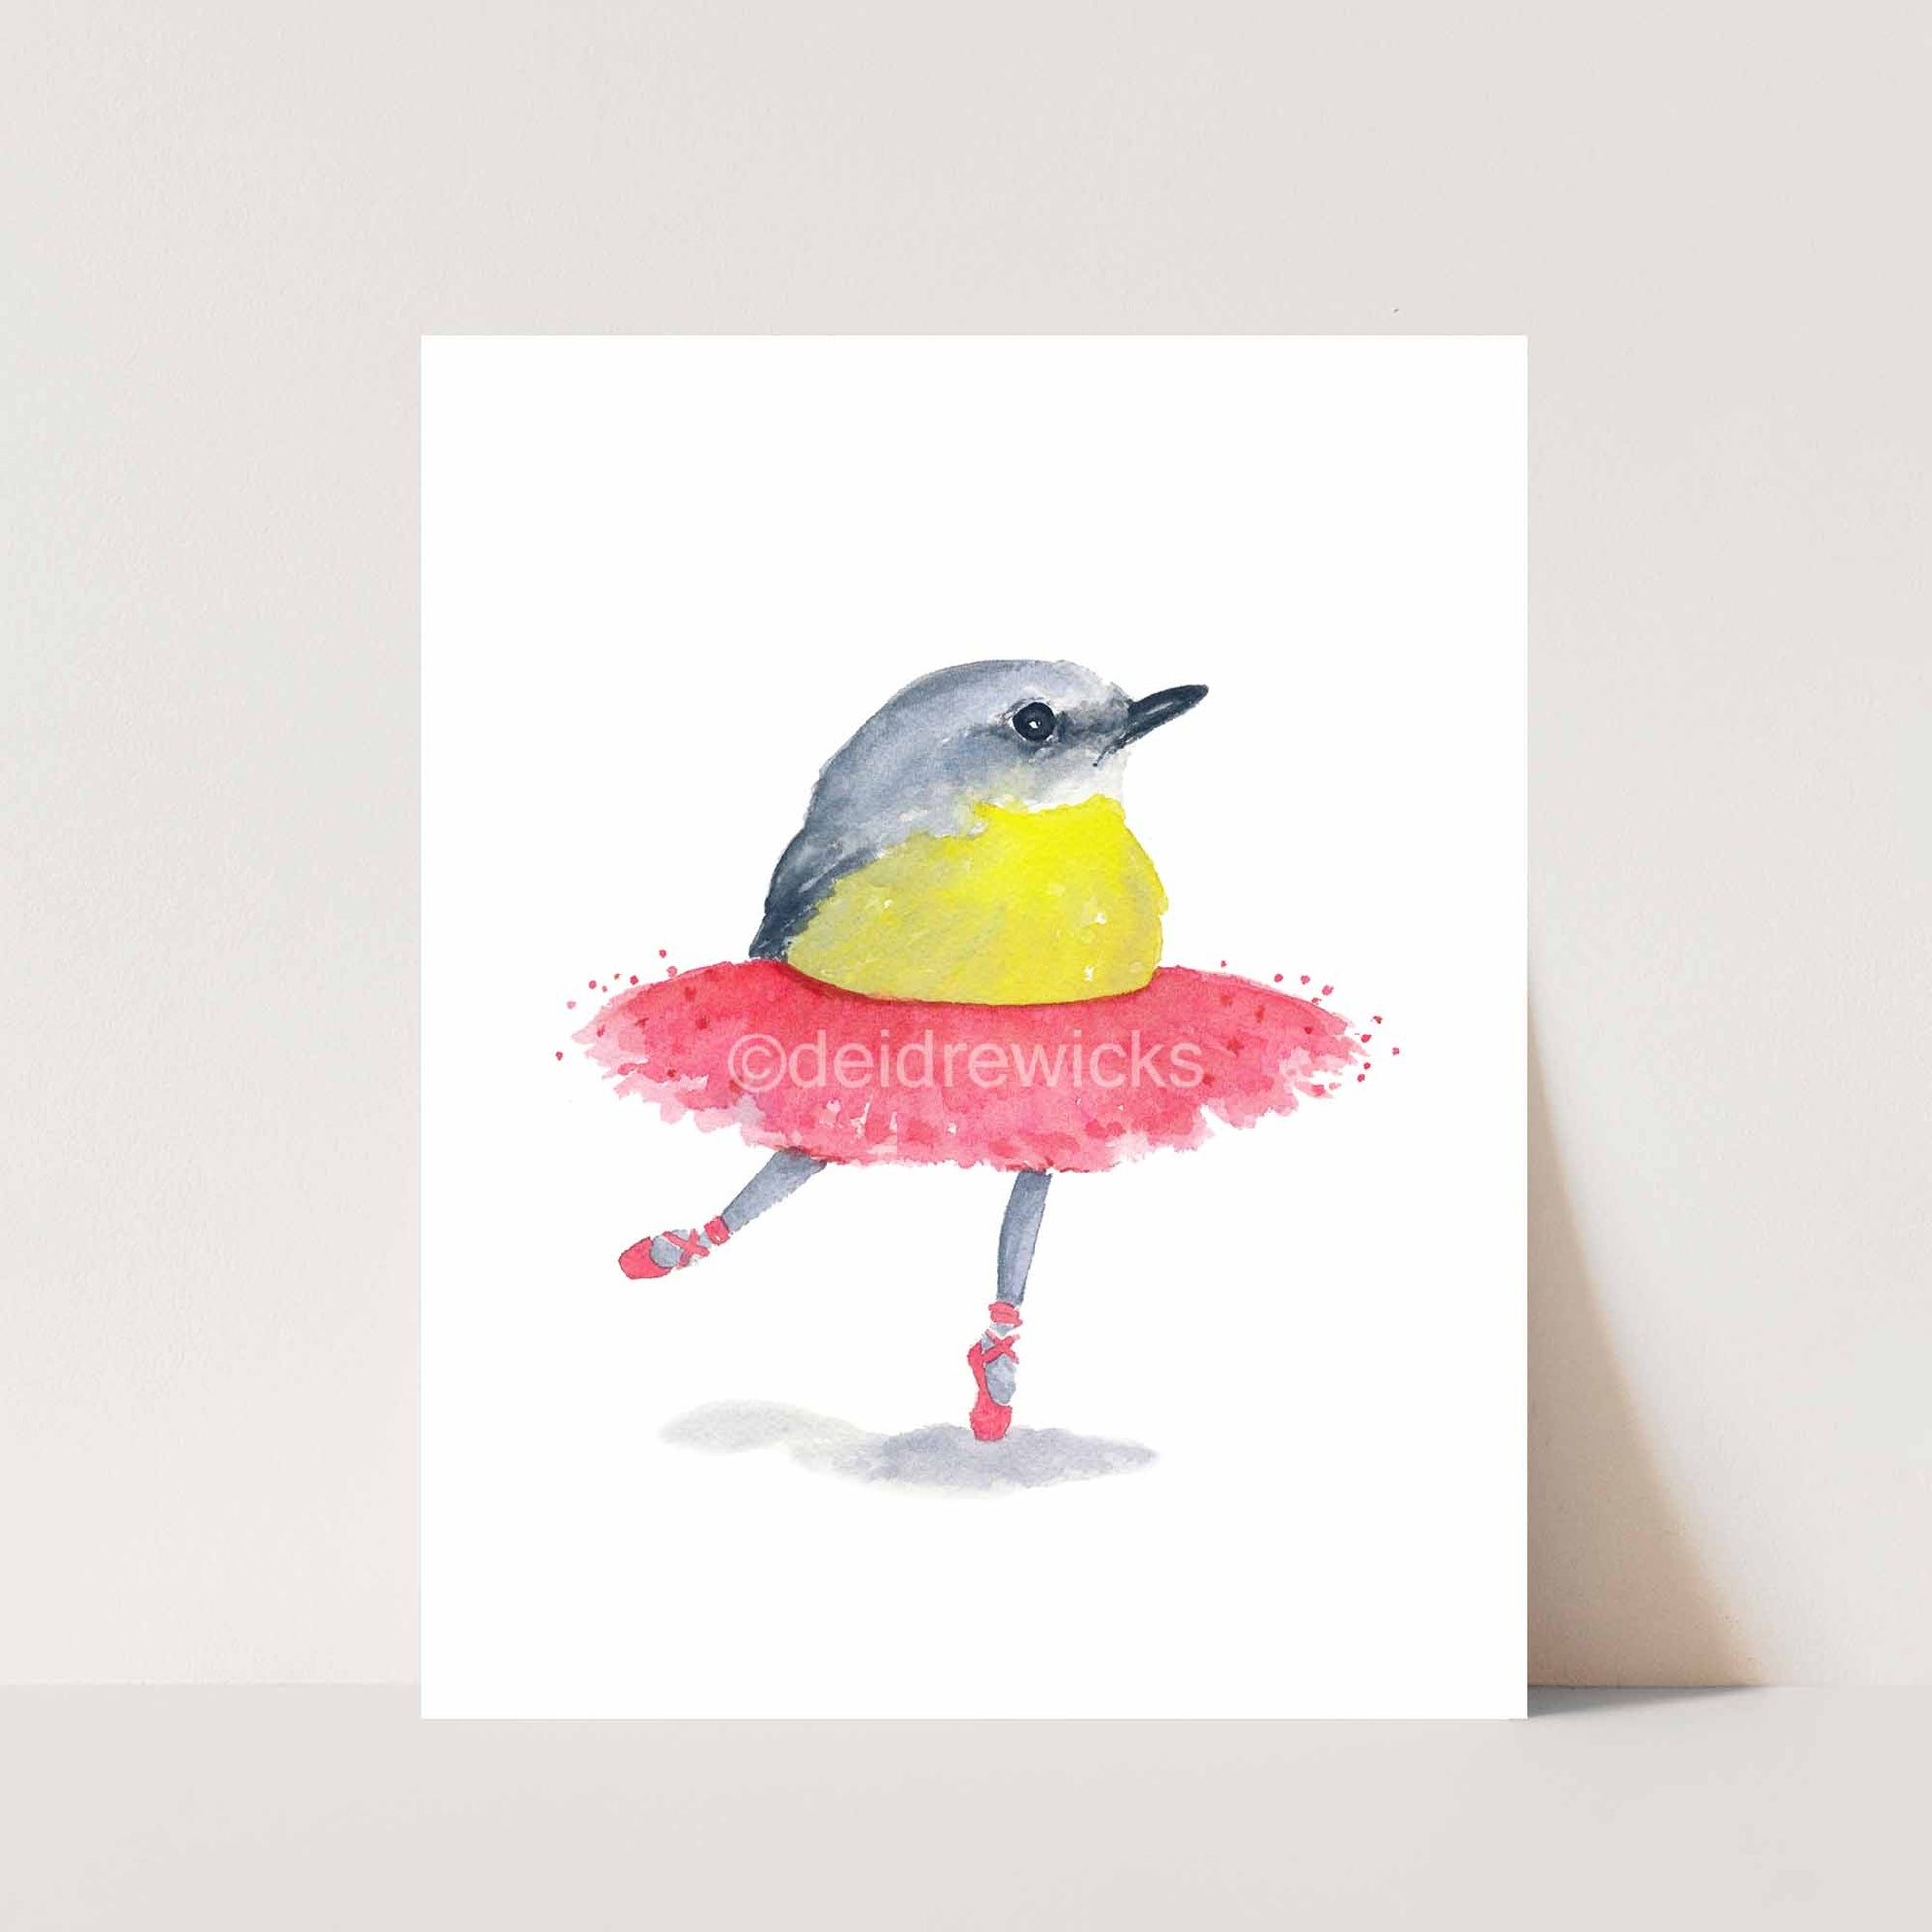 Print of a ballet bird wearing a pink tutu by Deidre Wicks